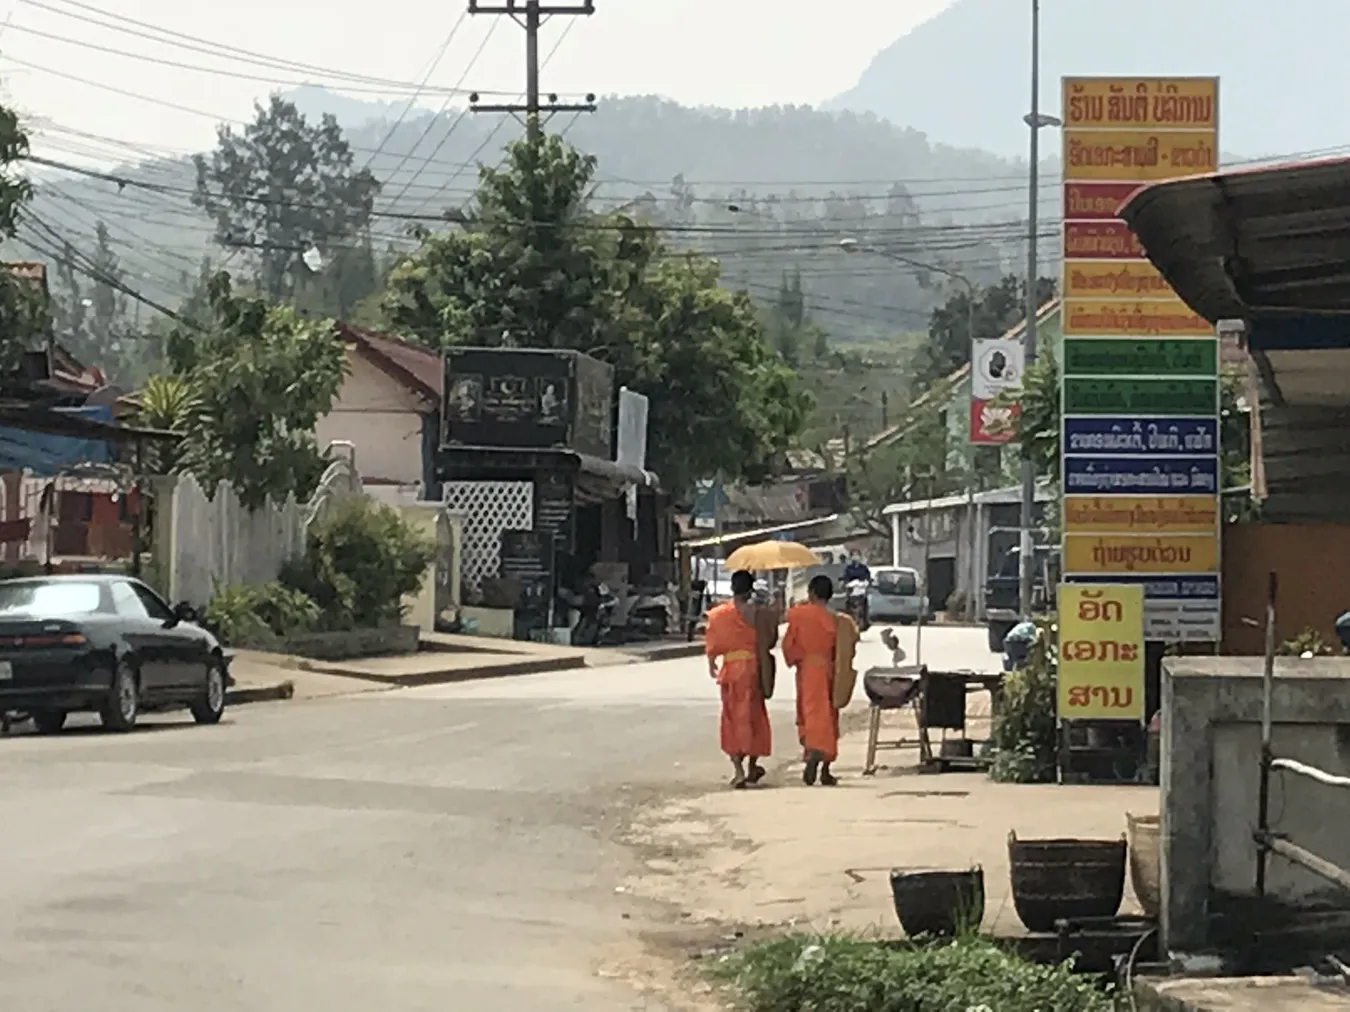 Monjes en Luang Prabang